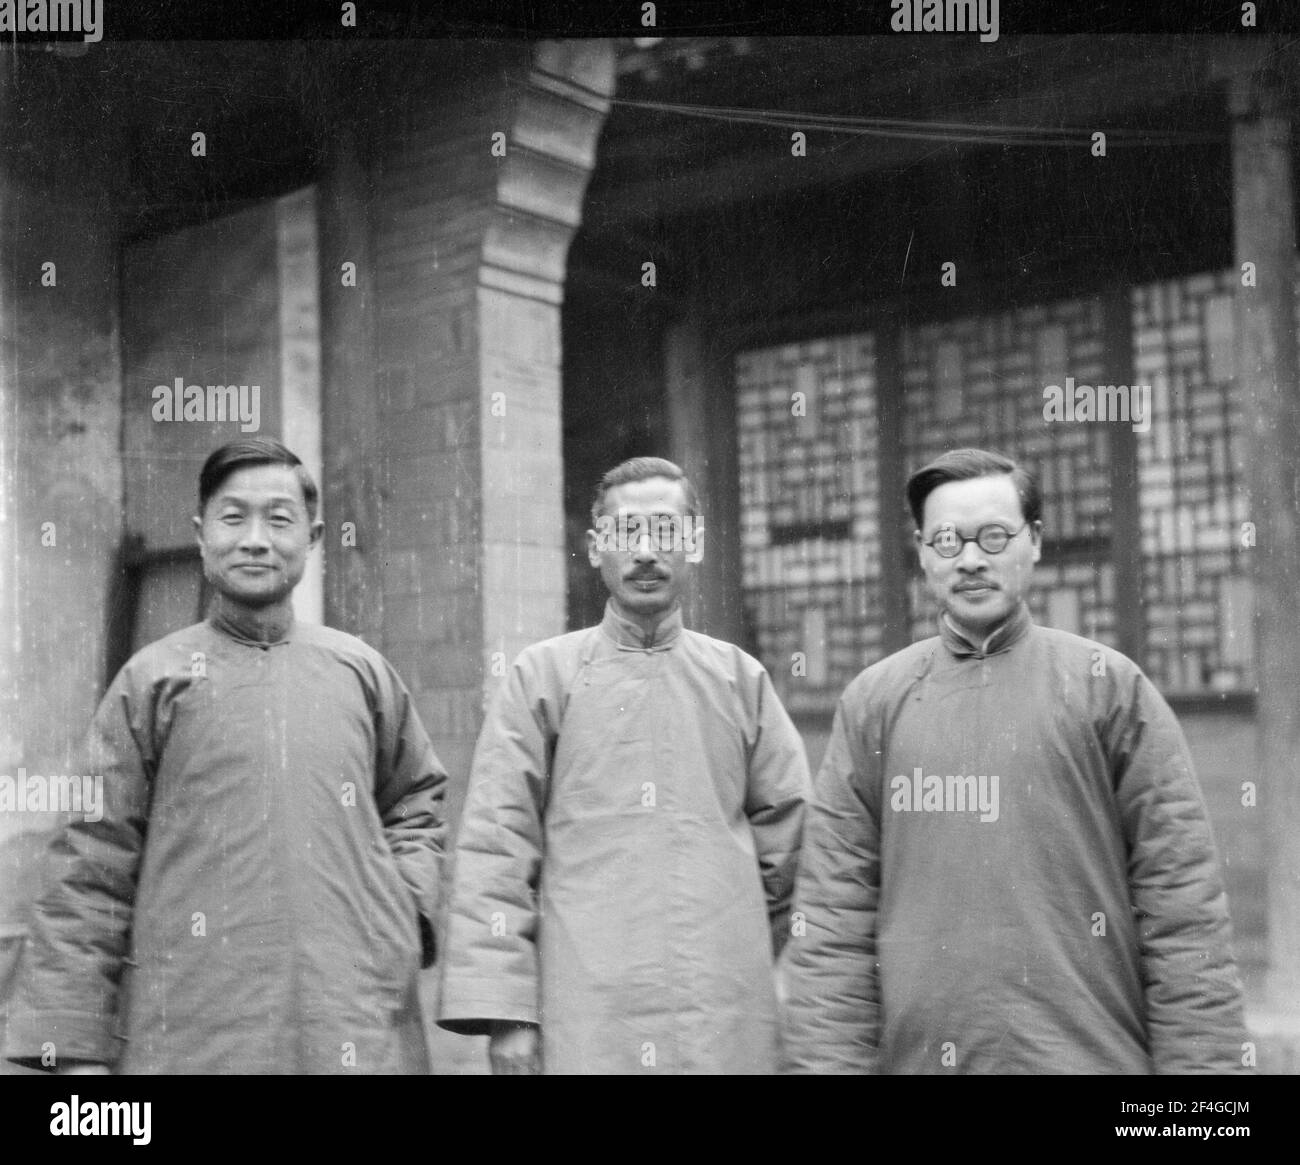 Jimmy Yen und Kollegen, China, Ding Xian (China), Dingzhou Shi (China), Hebei Sheng (China), 1931. Aus der Sammlung Sidney D. Gamble Photographs. () Stockfoto